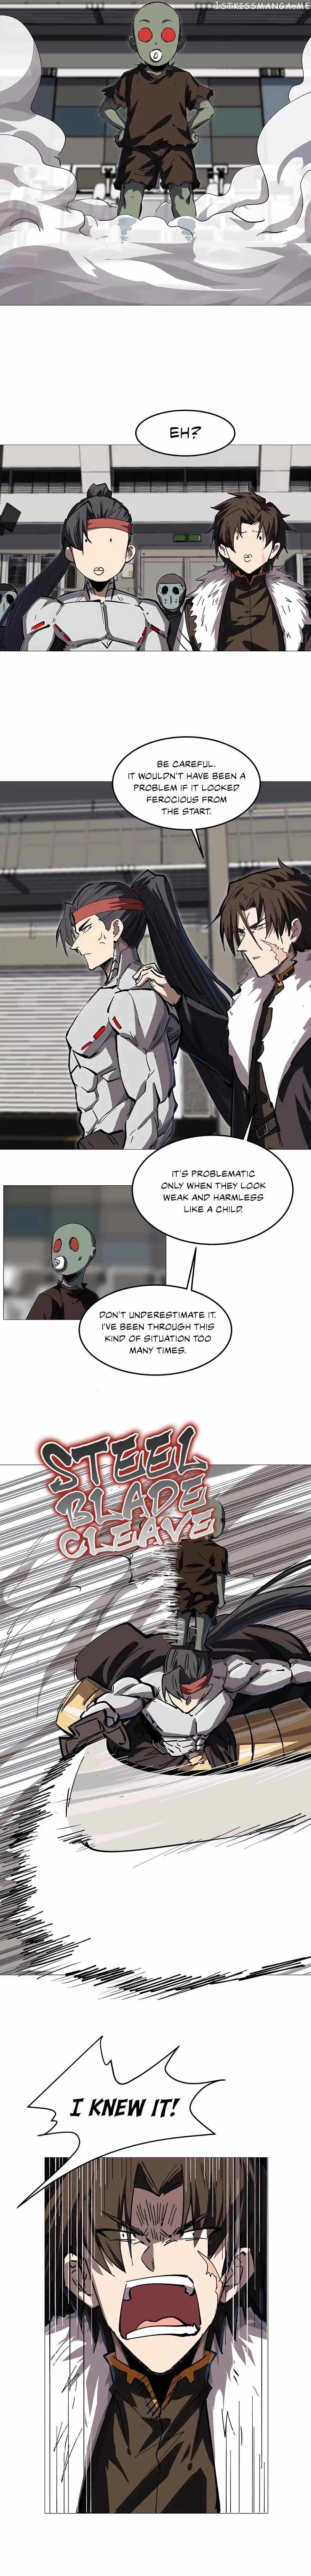 Mr. Zombie Chapter 23 page 8 - Mangakakalot